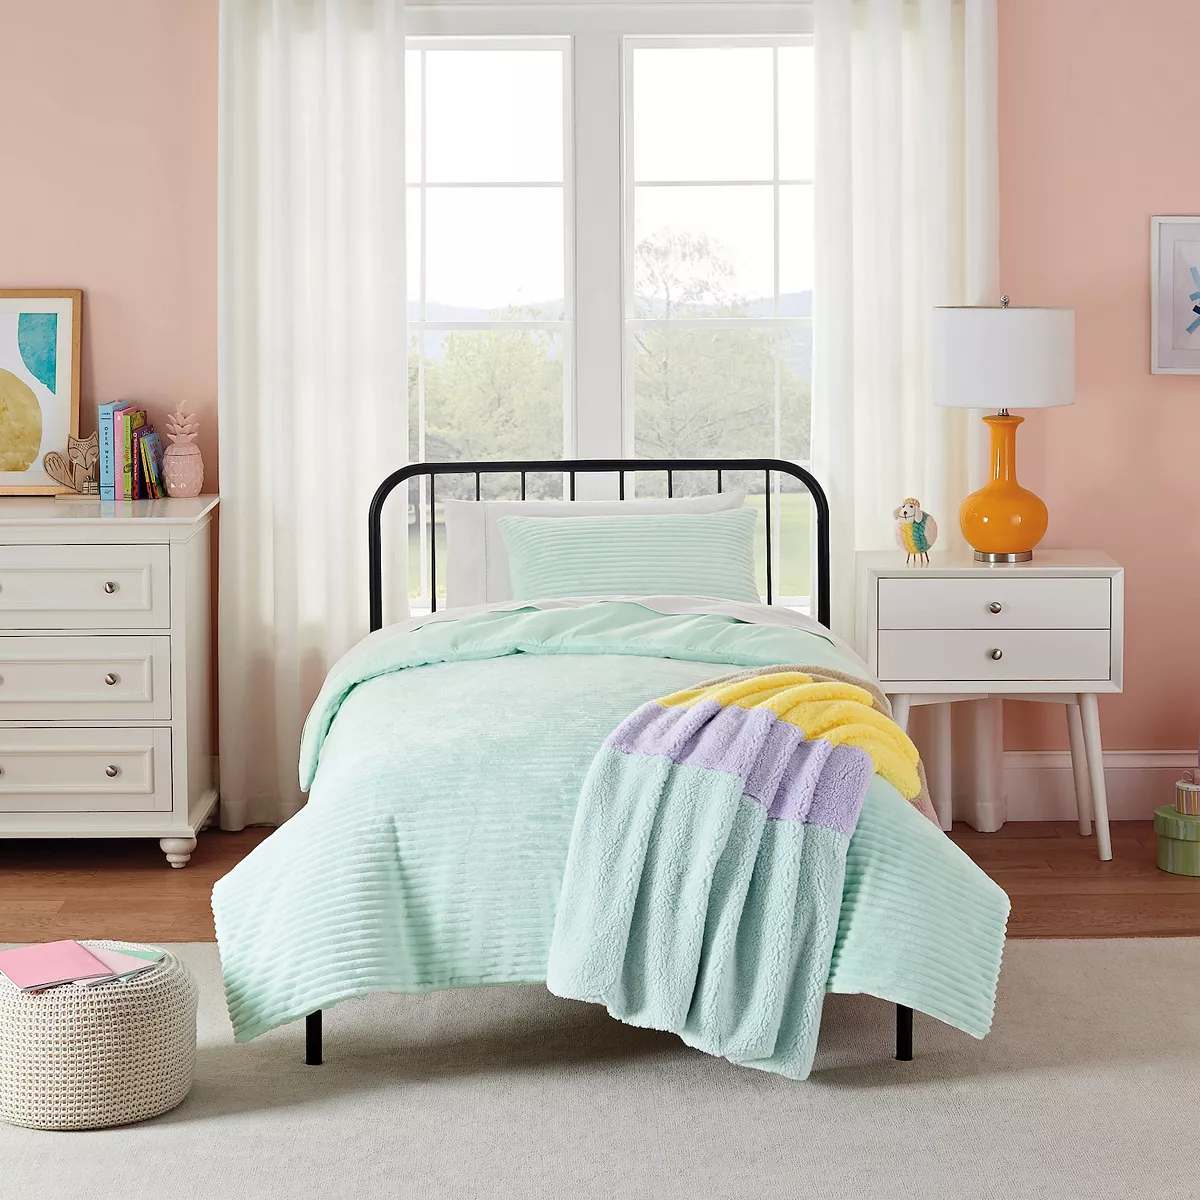 Koolaburra by Ugg Comforter Set for Kids